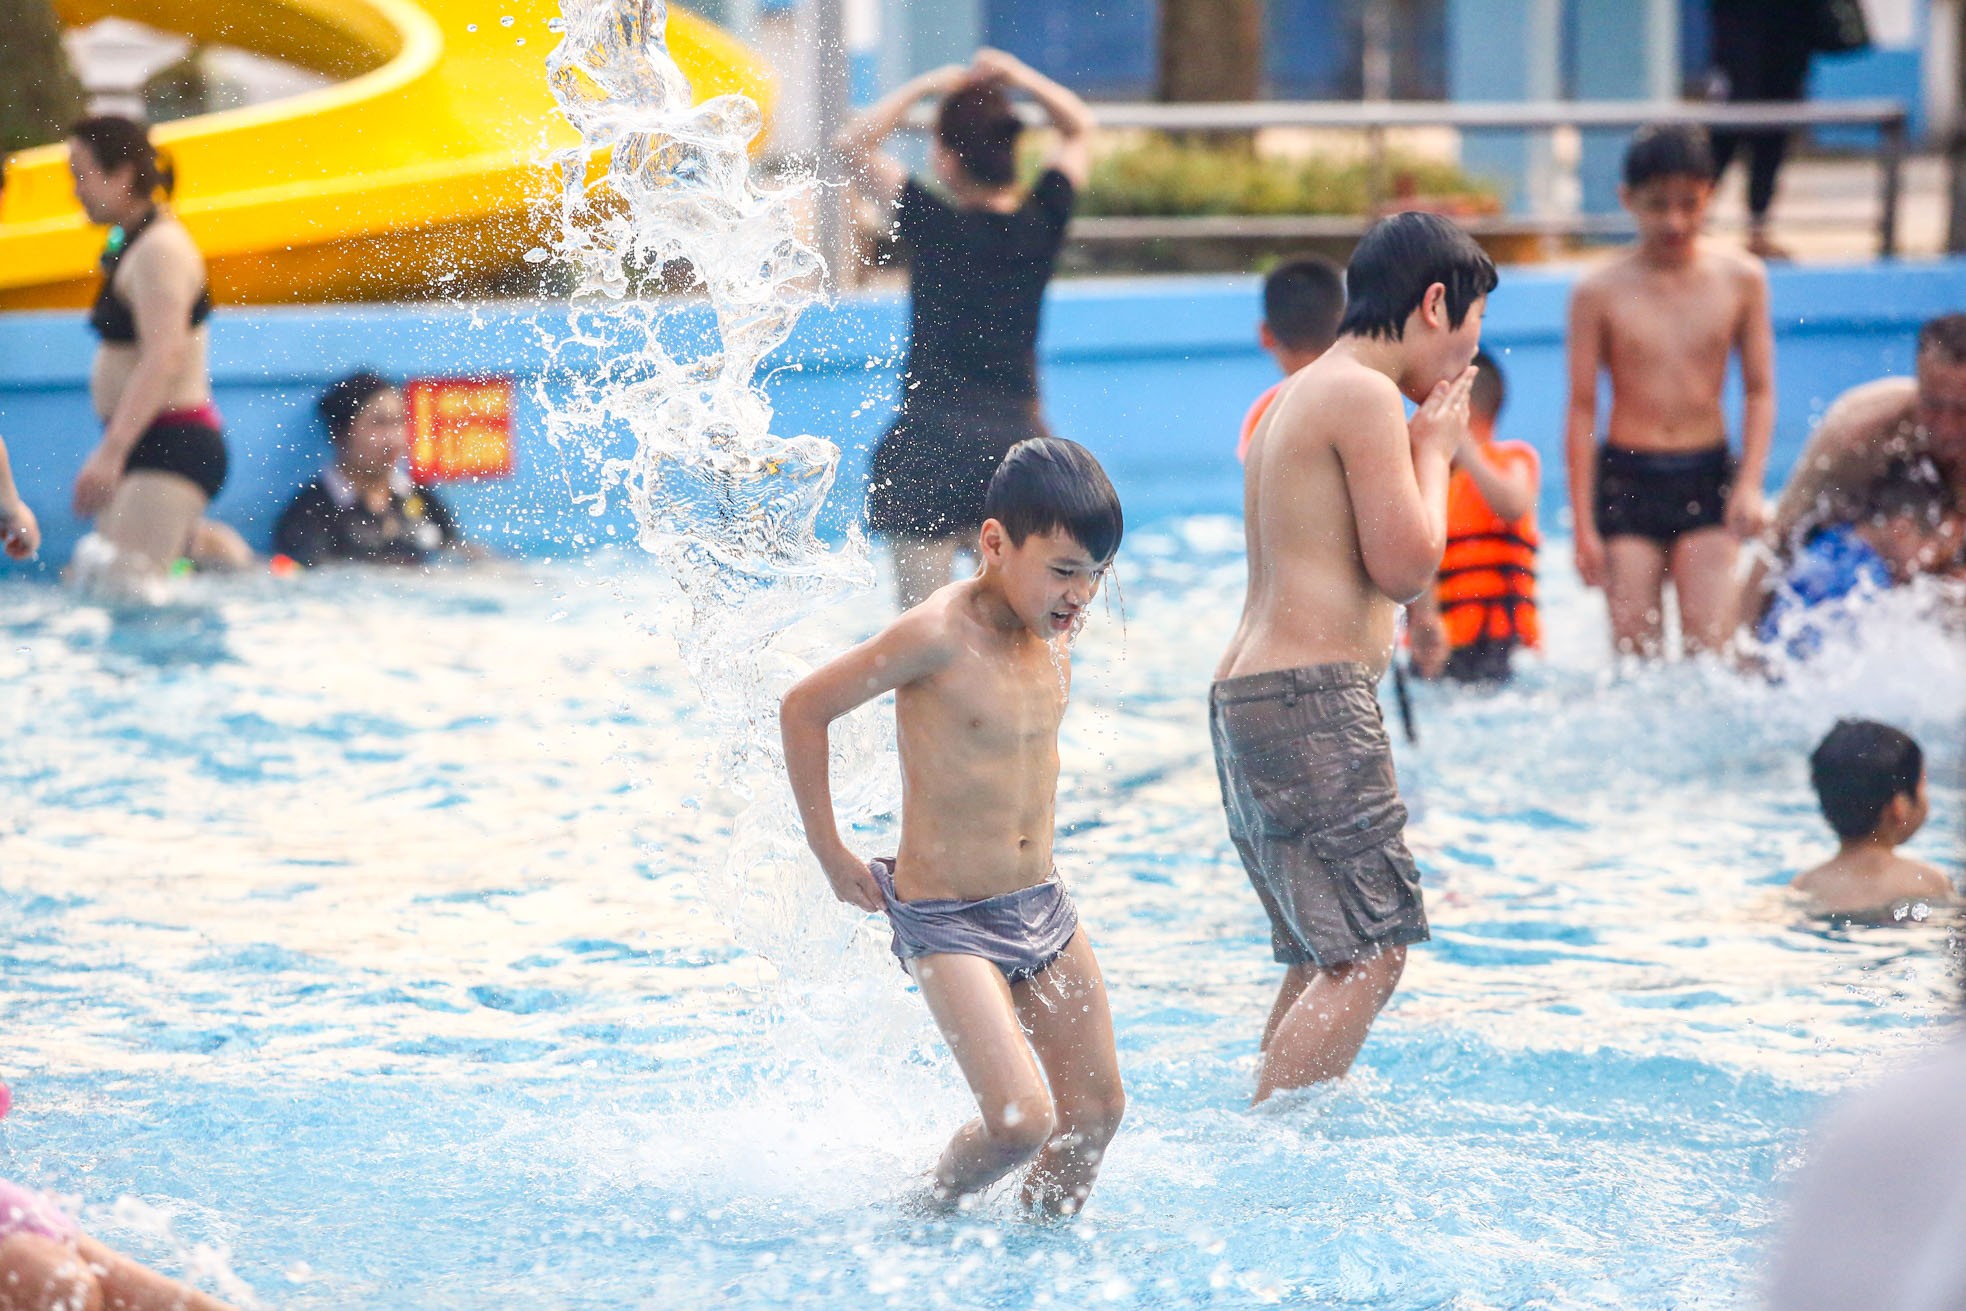 "الحرارة شديدة"، يتدفق الناس إلى الحديقة المائية في أيام العطلات، الصورة 35